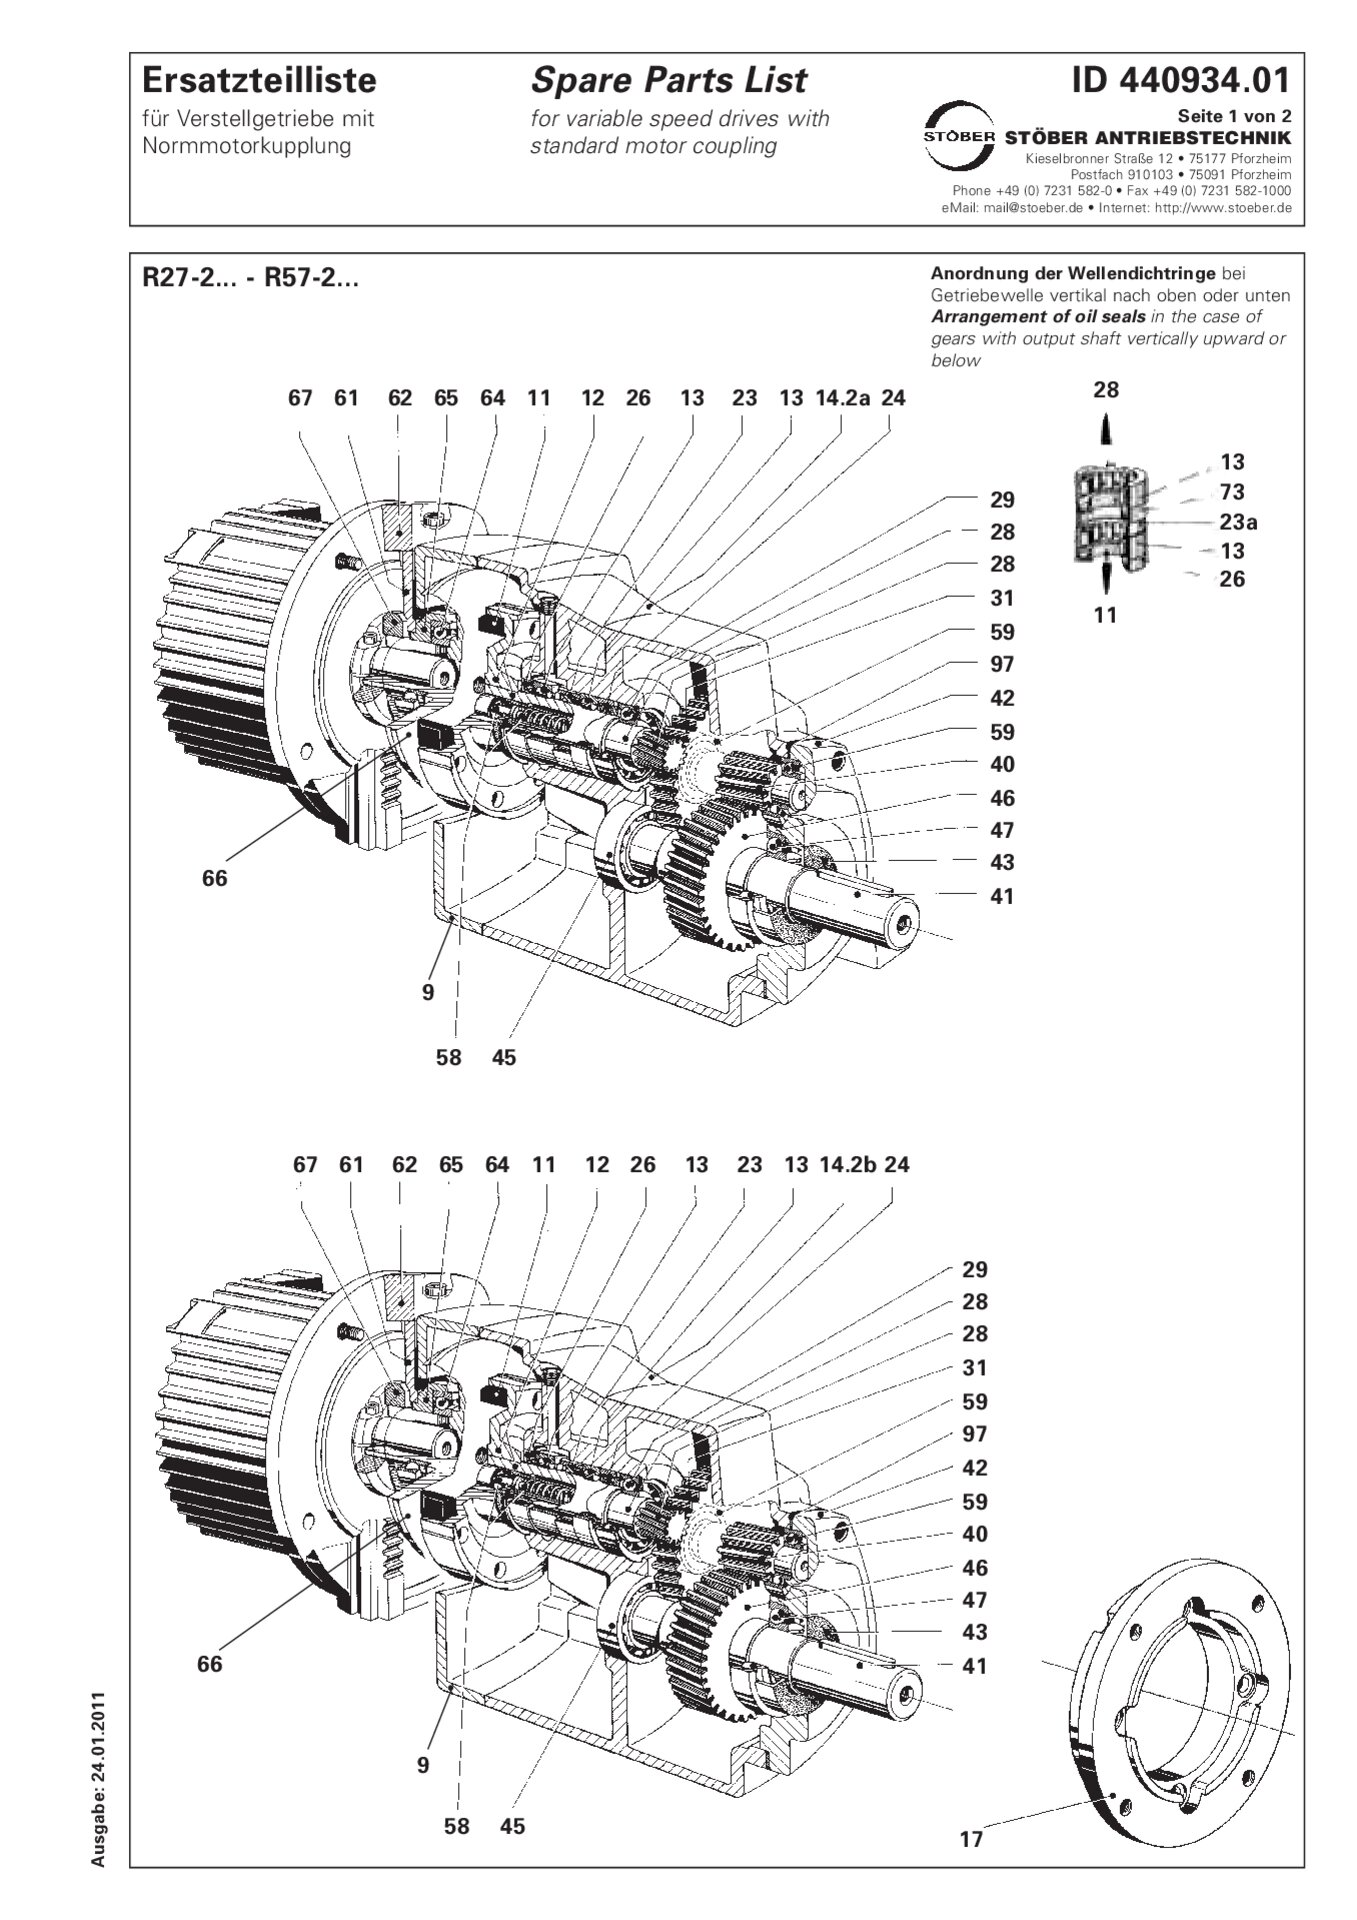 Listino dei pezzi di ricambio R27-2/R37-2/R47-2/R57-2 con accoppiamento motore standard